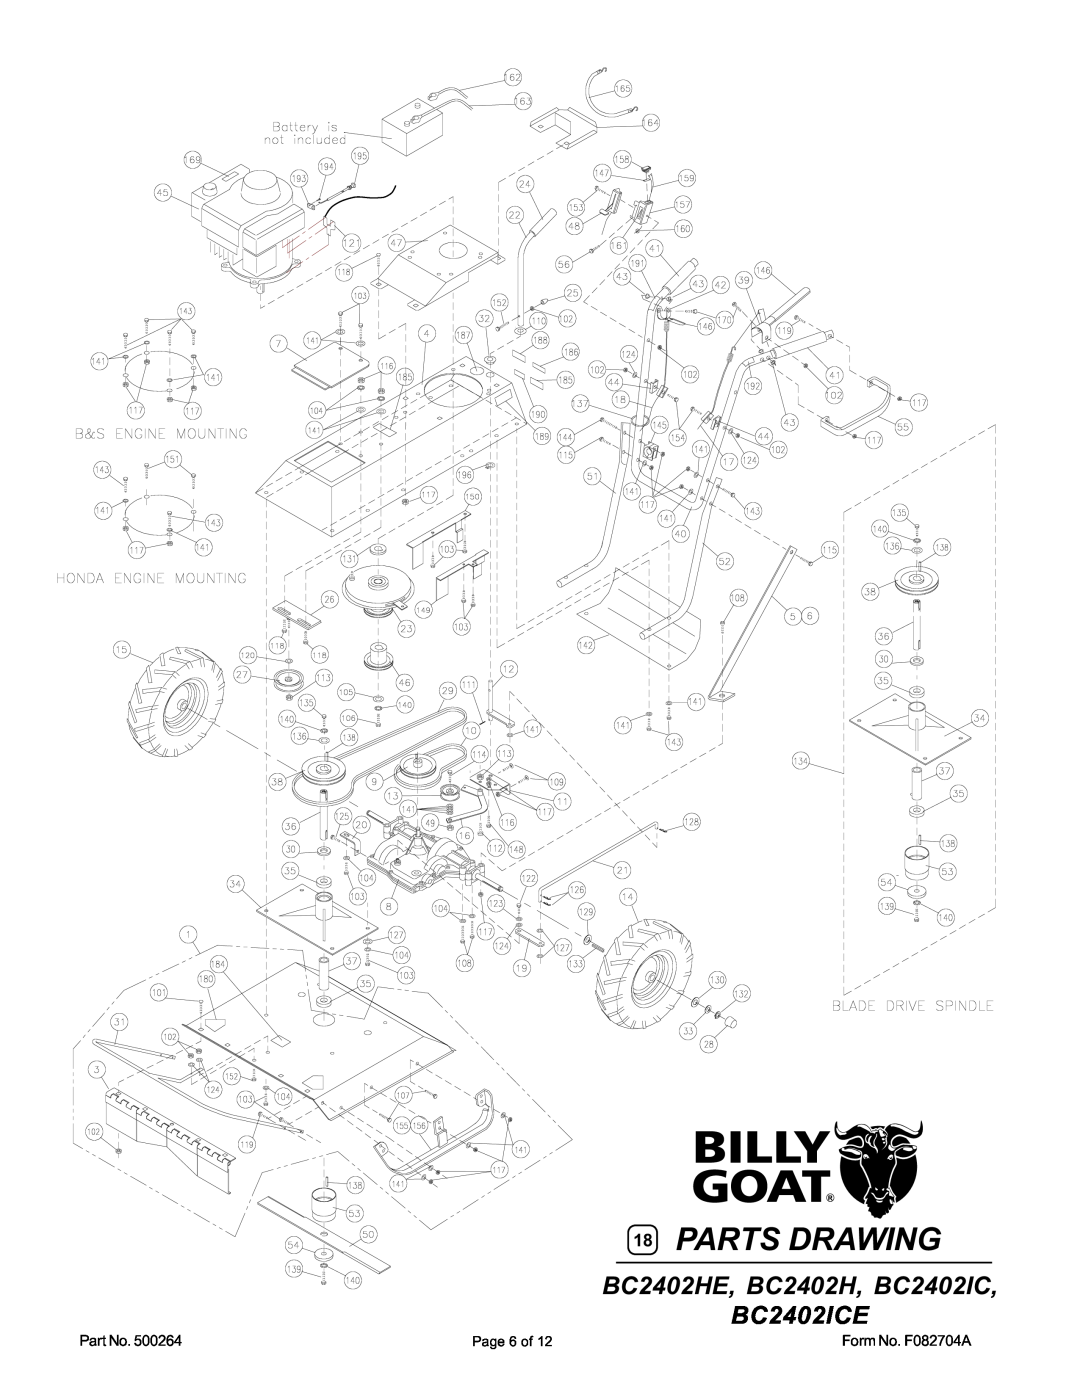 Billy Goat BC2401IC, BC2402H, BC2402HE owner manual Parts Drawing, BC2402HE, BC2402H, BC2402IC BC2402ICE 